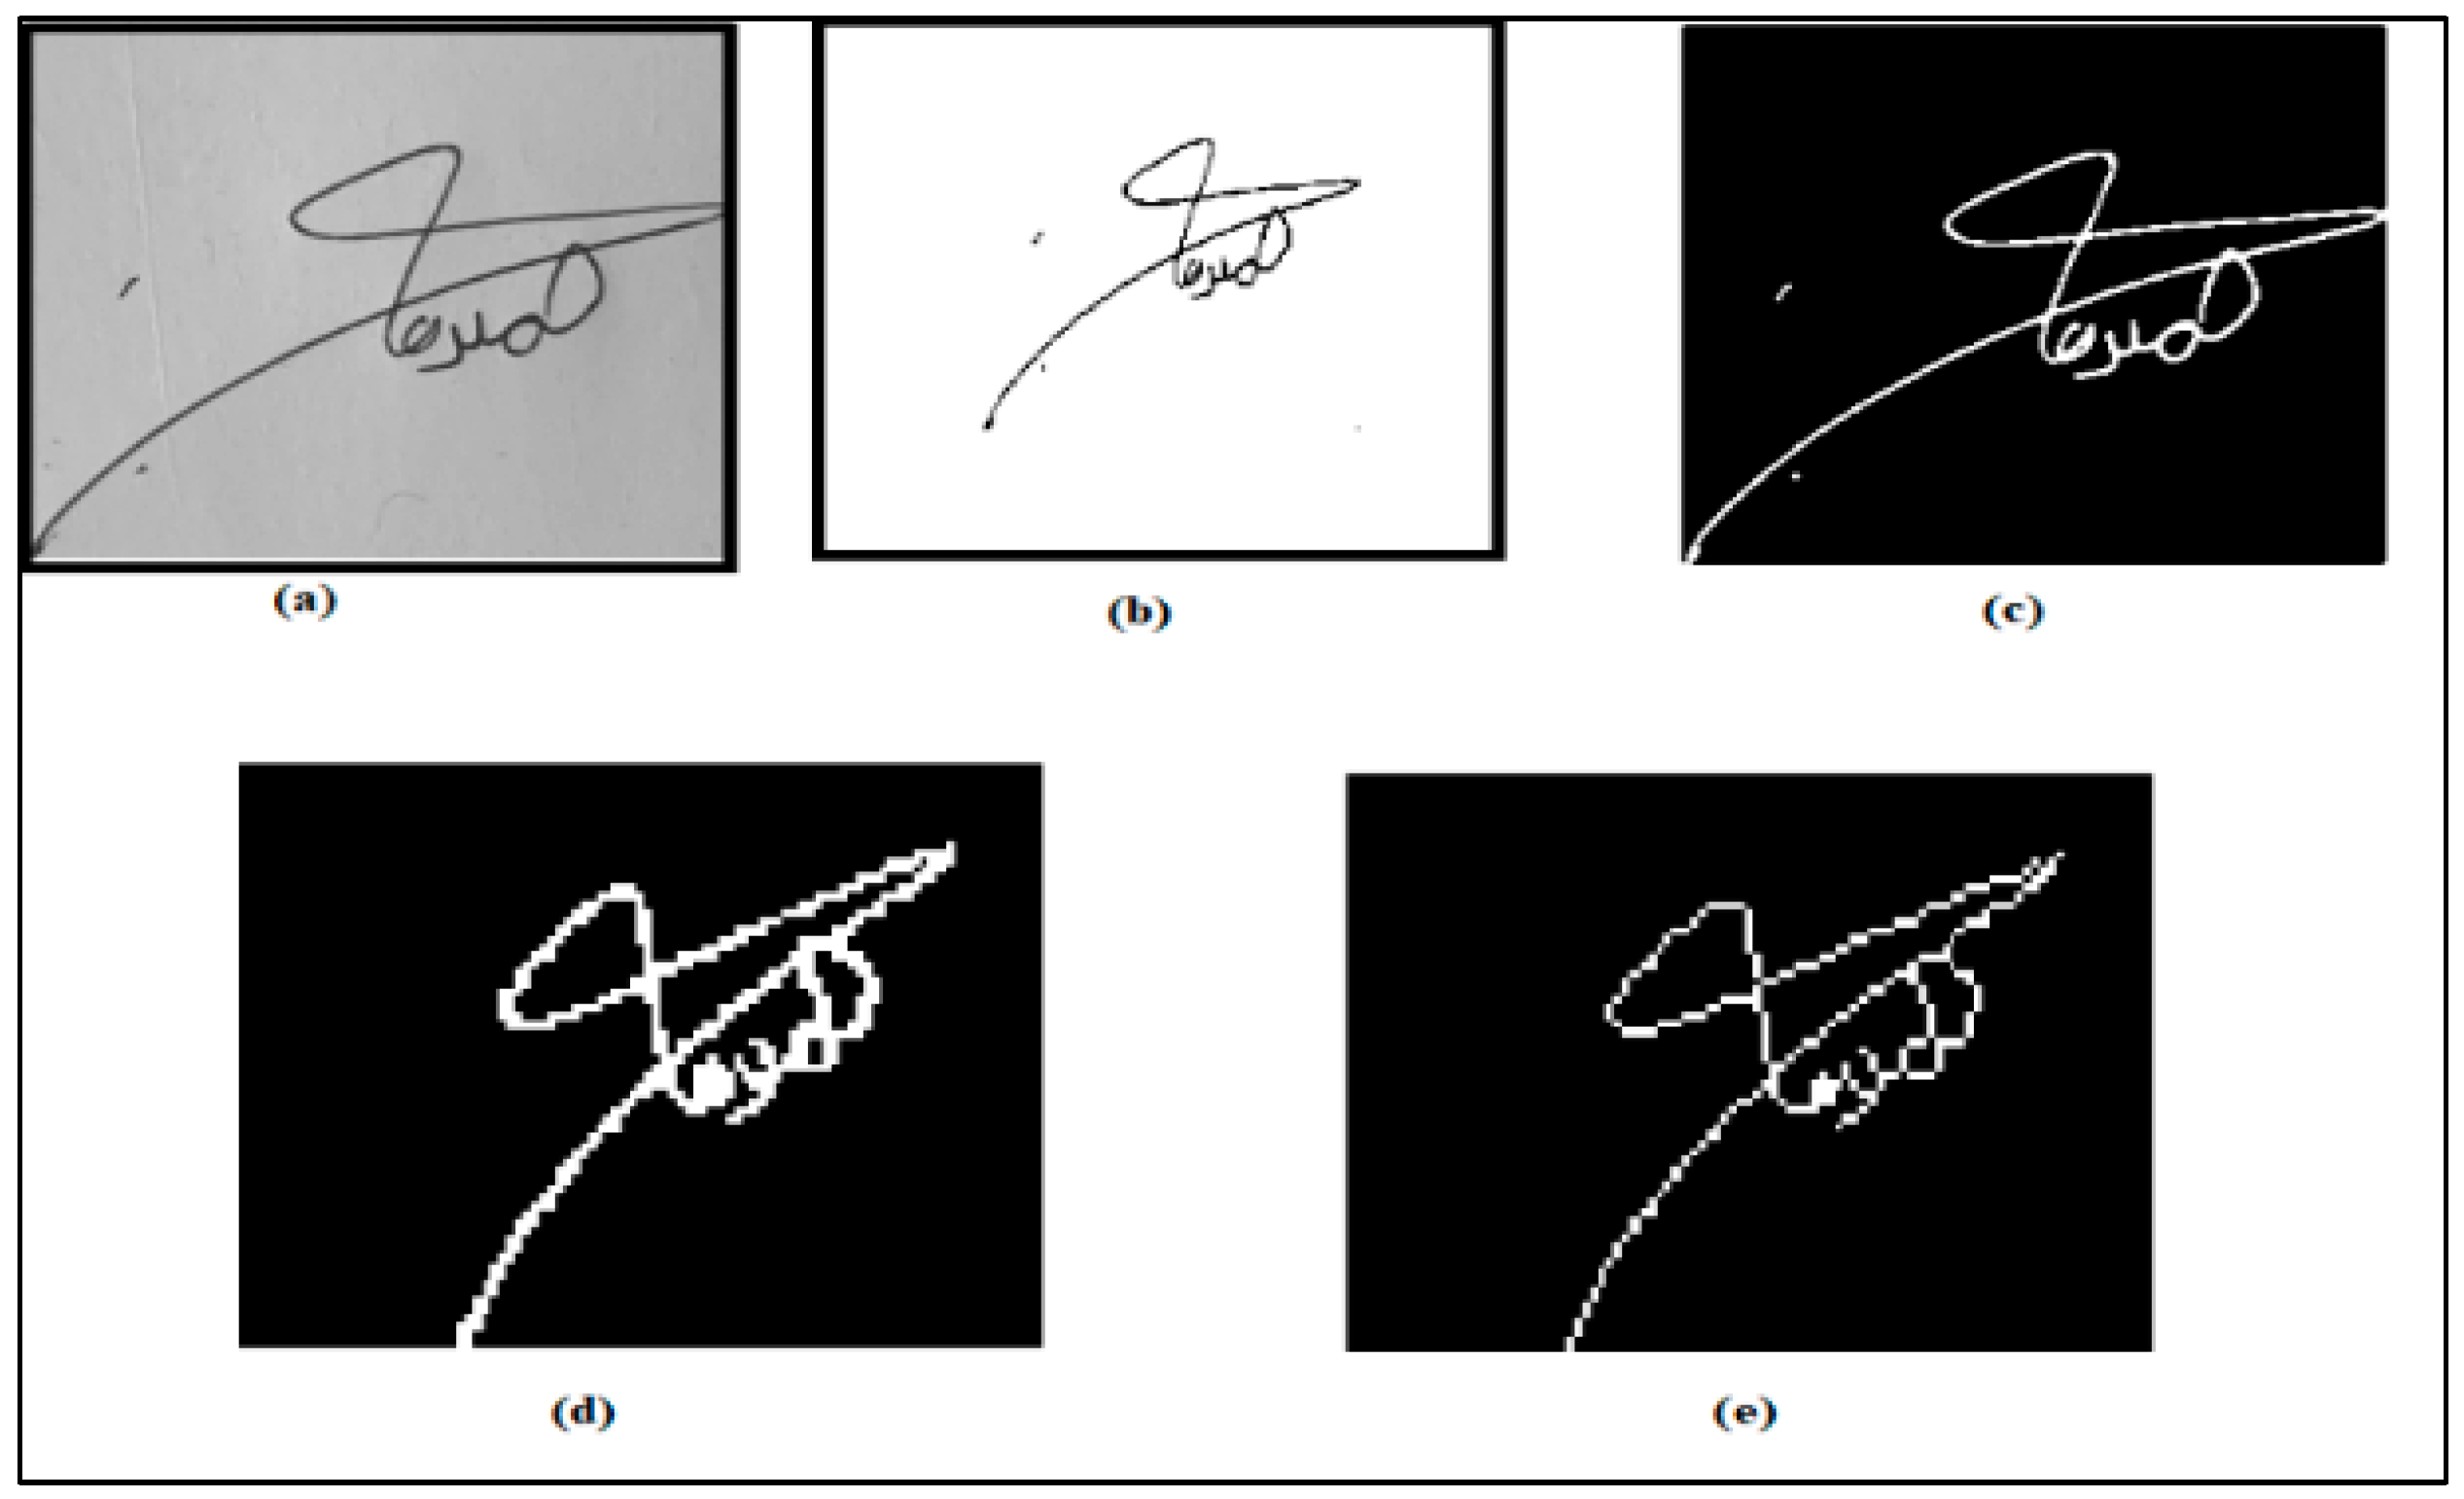 signatures samples c